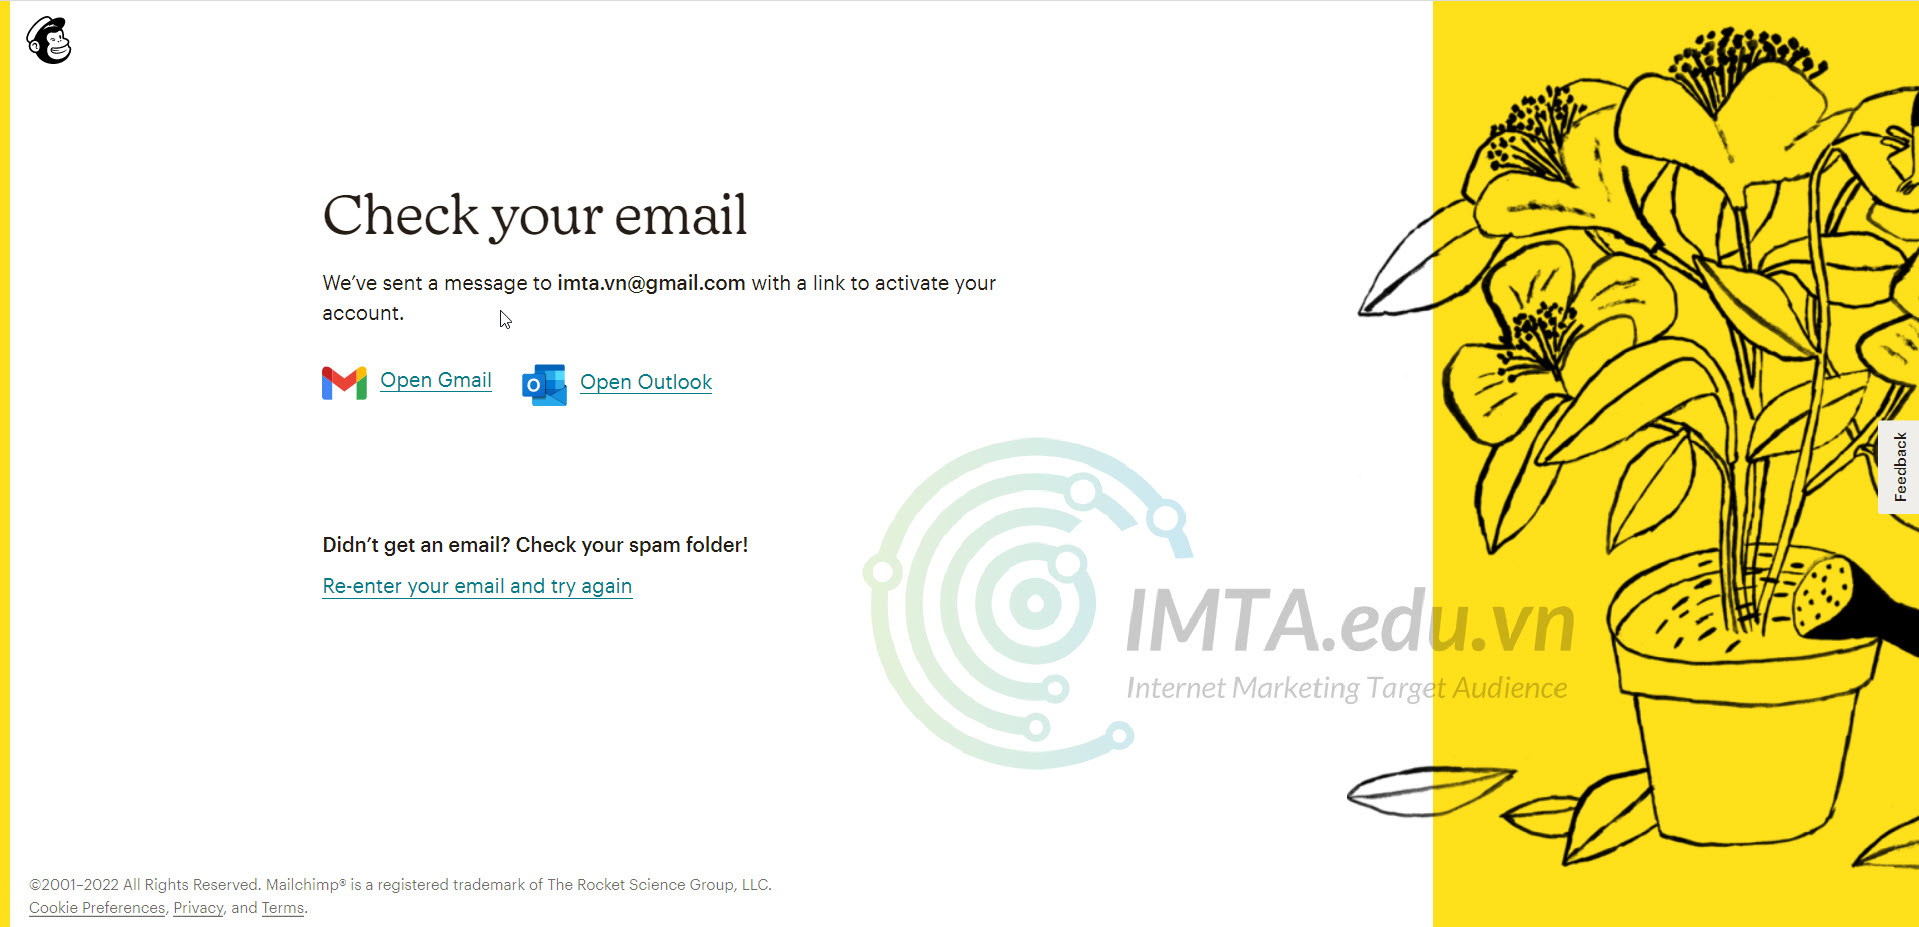 Check email kích hoạt tài khoản MailChimp